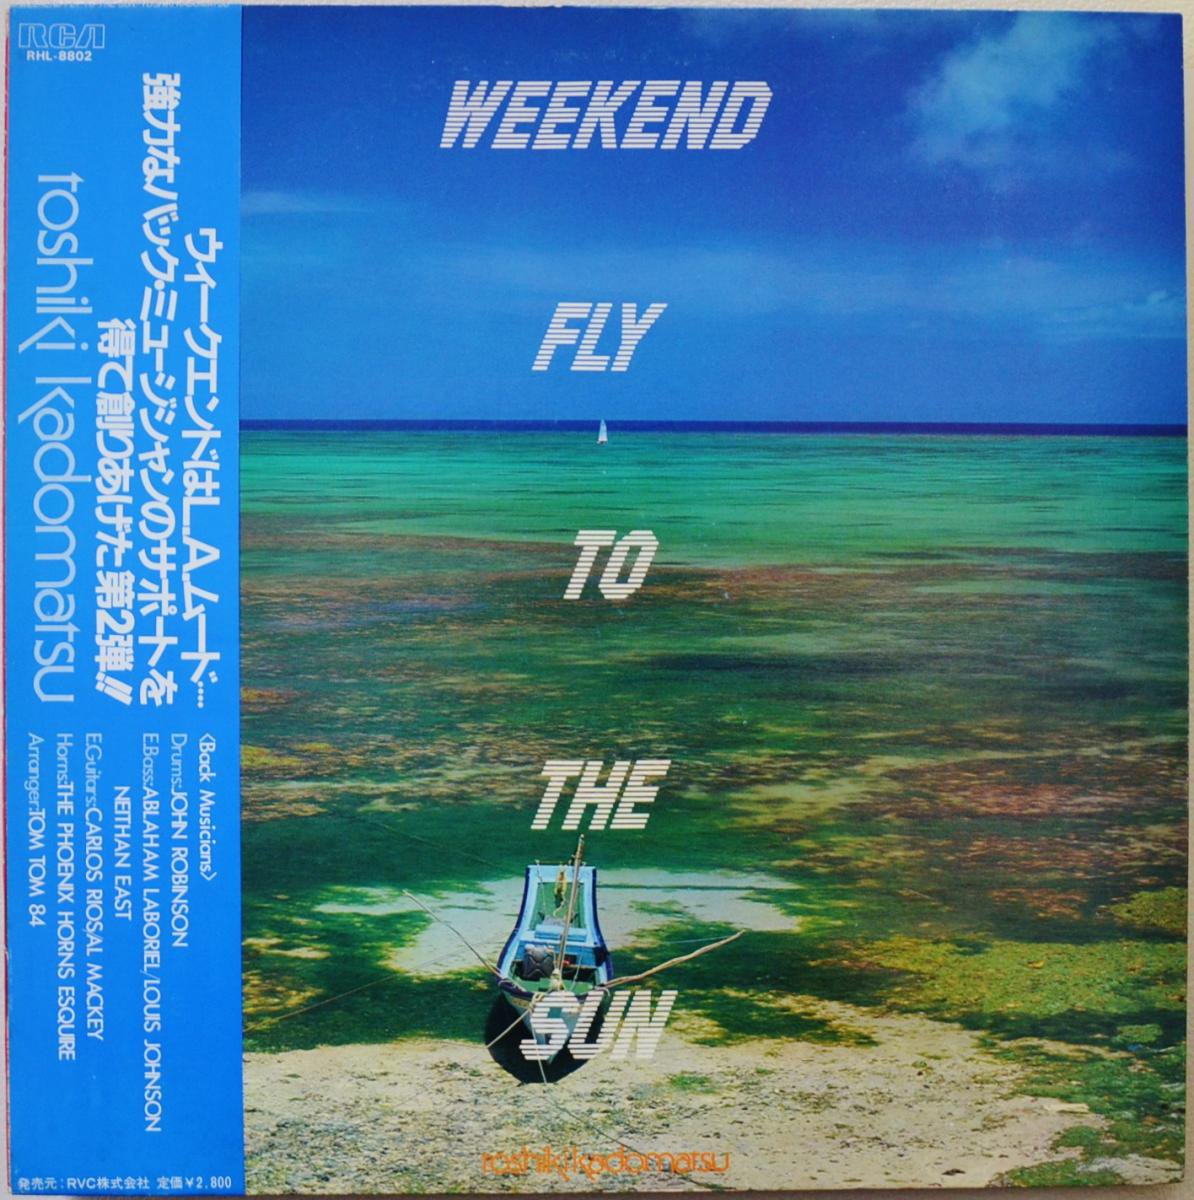 角松敏生 TOSHIKI KADOMATSU / WEEKEND FLY TO THE SUN (LP)